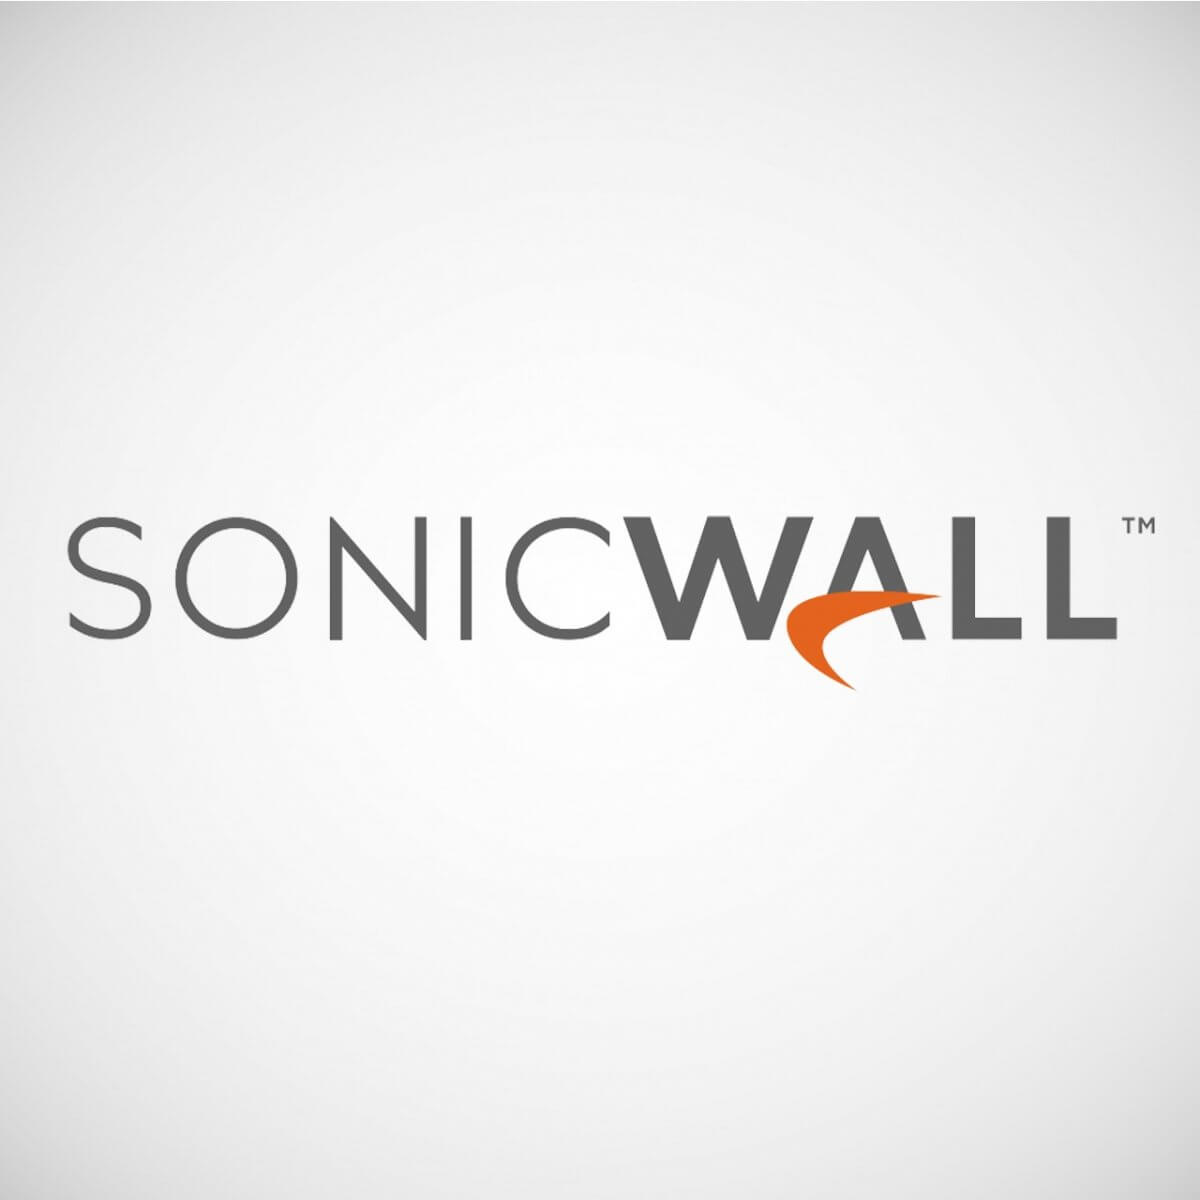 sonicwall mobile connect mac ssl error occurred